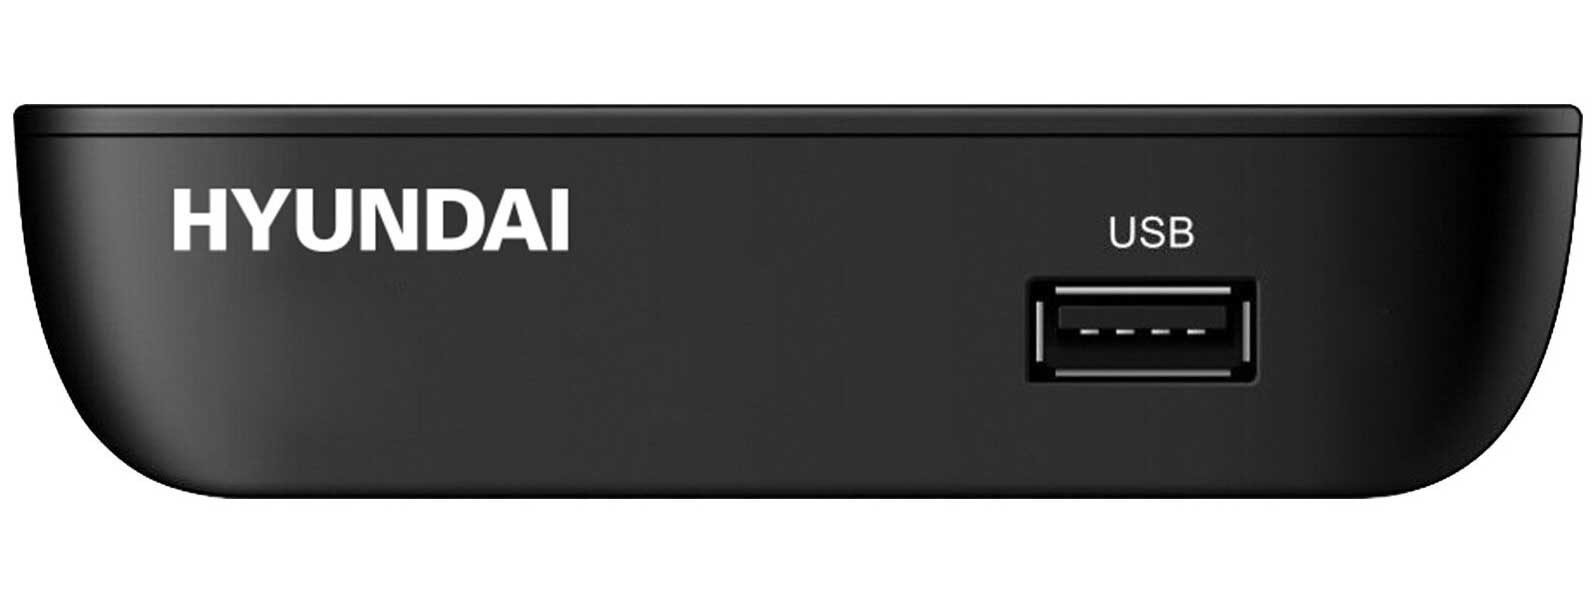 TV-тюнер DVB-T2 Hyundai H-DVB460, черный